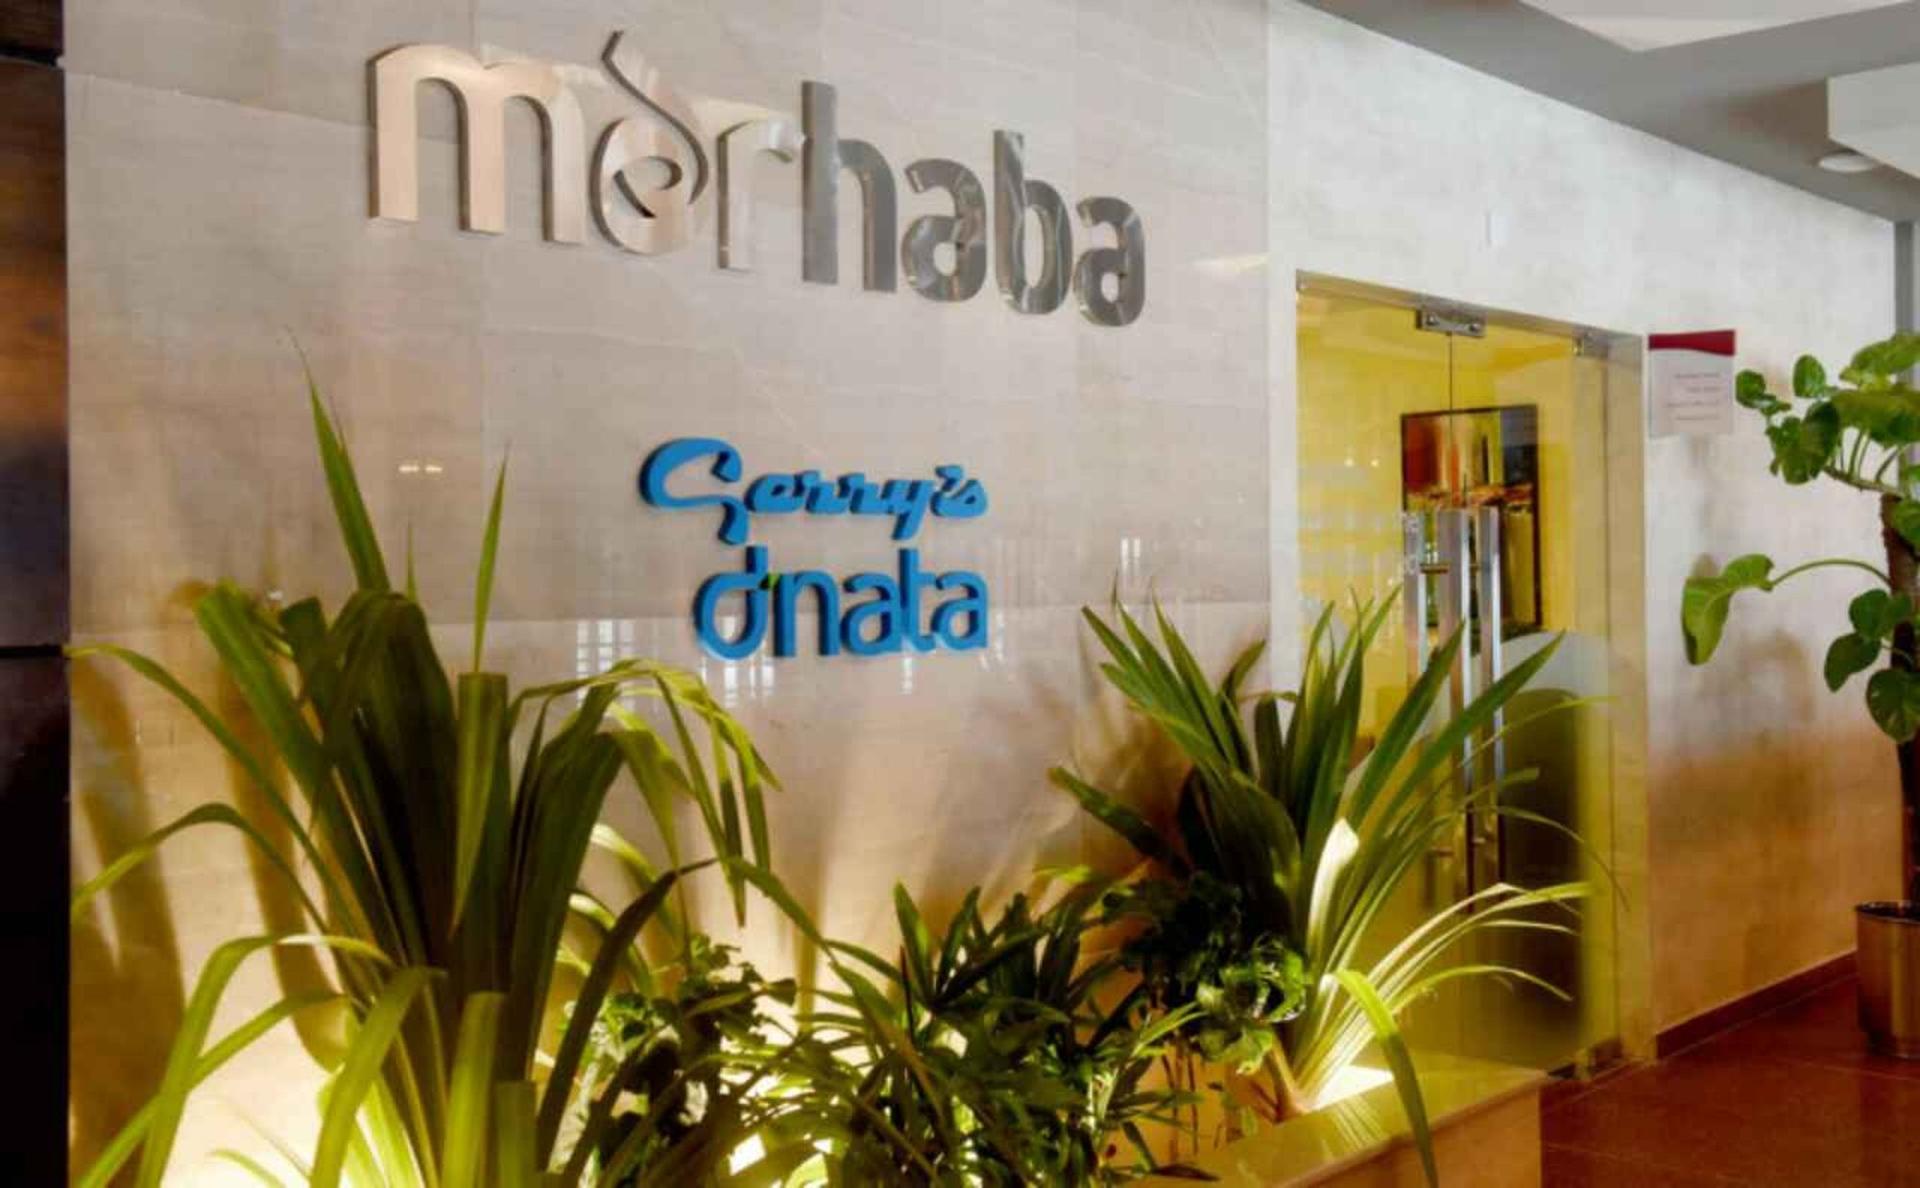 Marhaba Lounge image 7 of 8